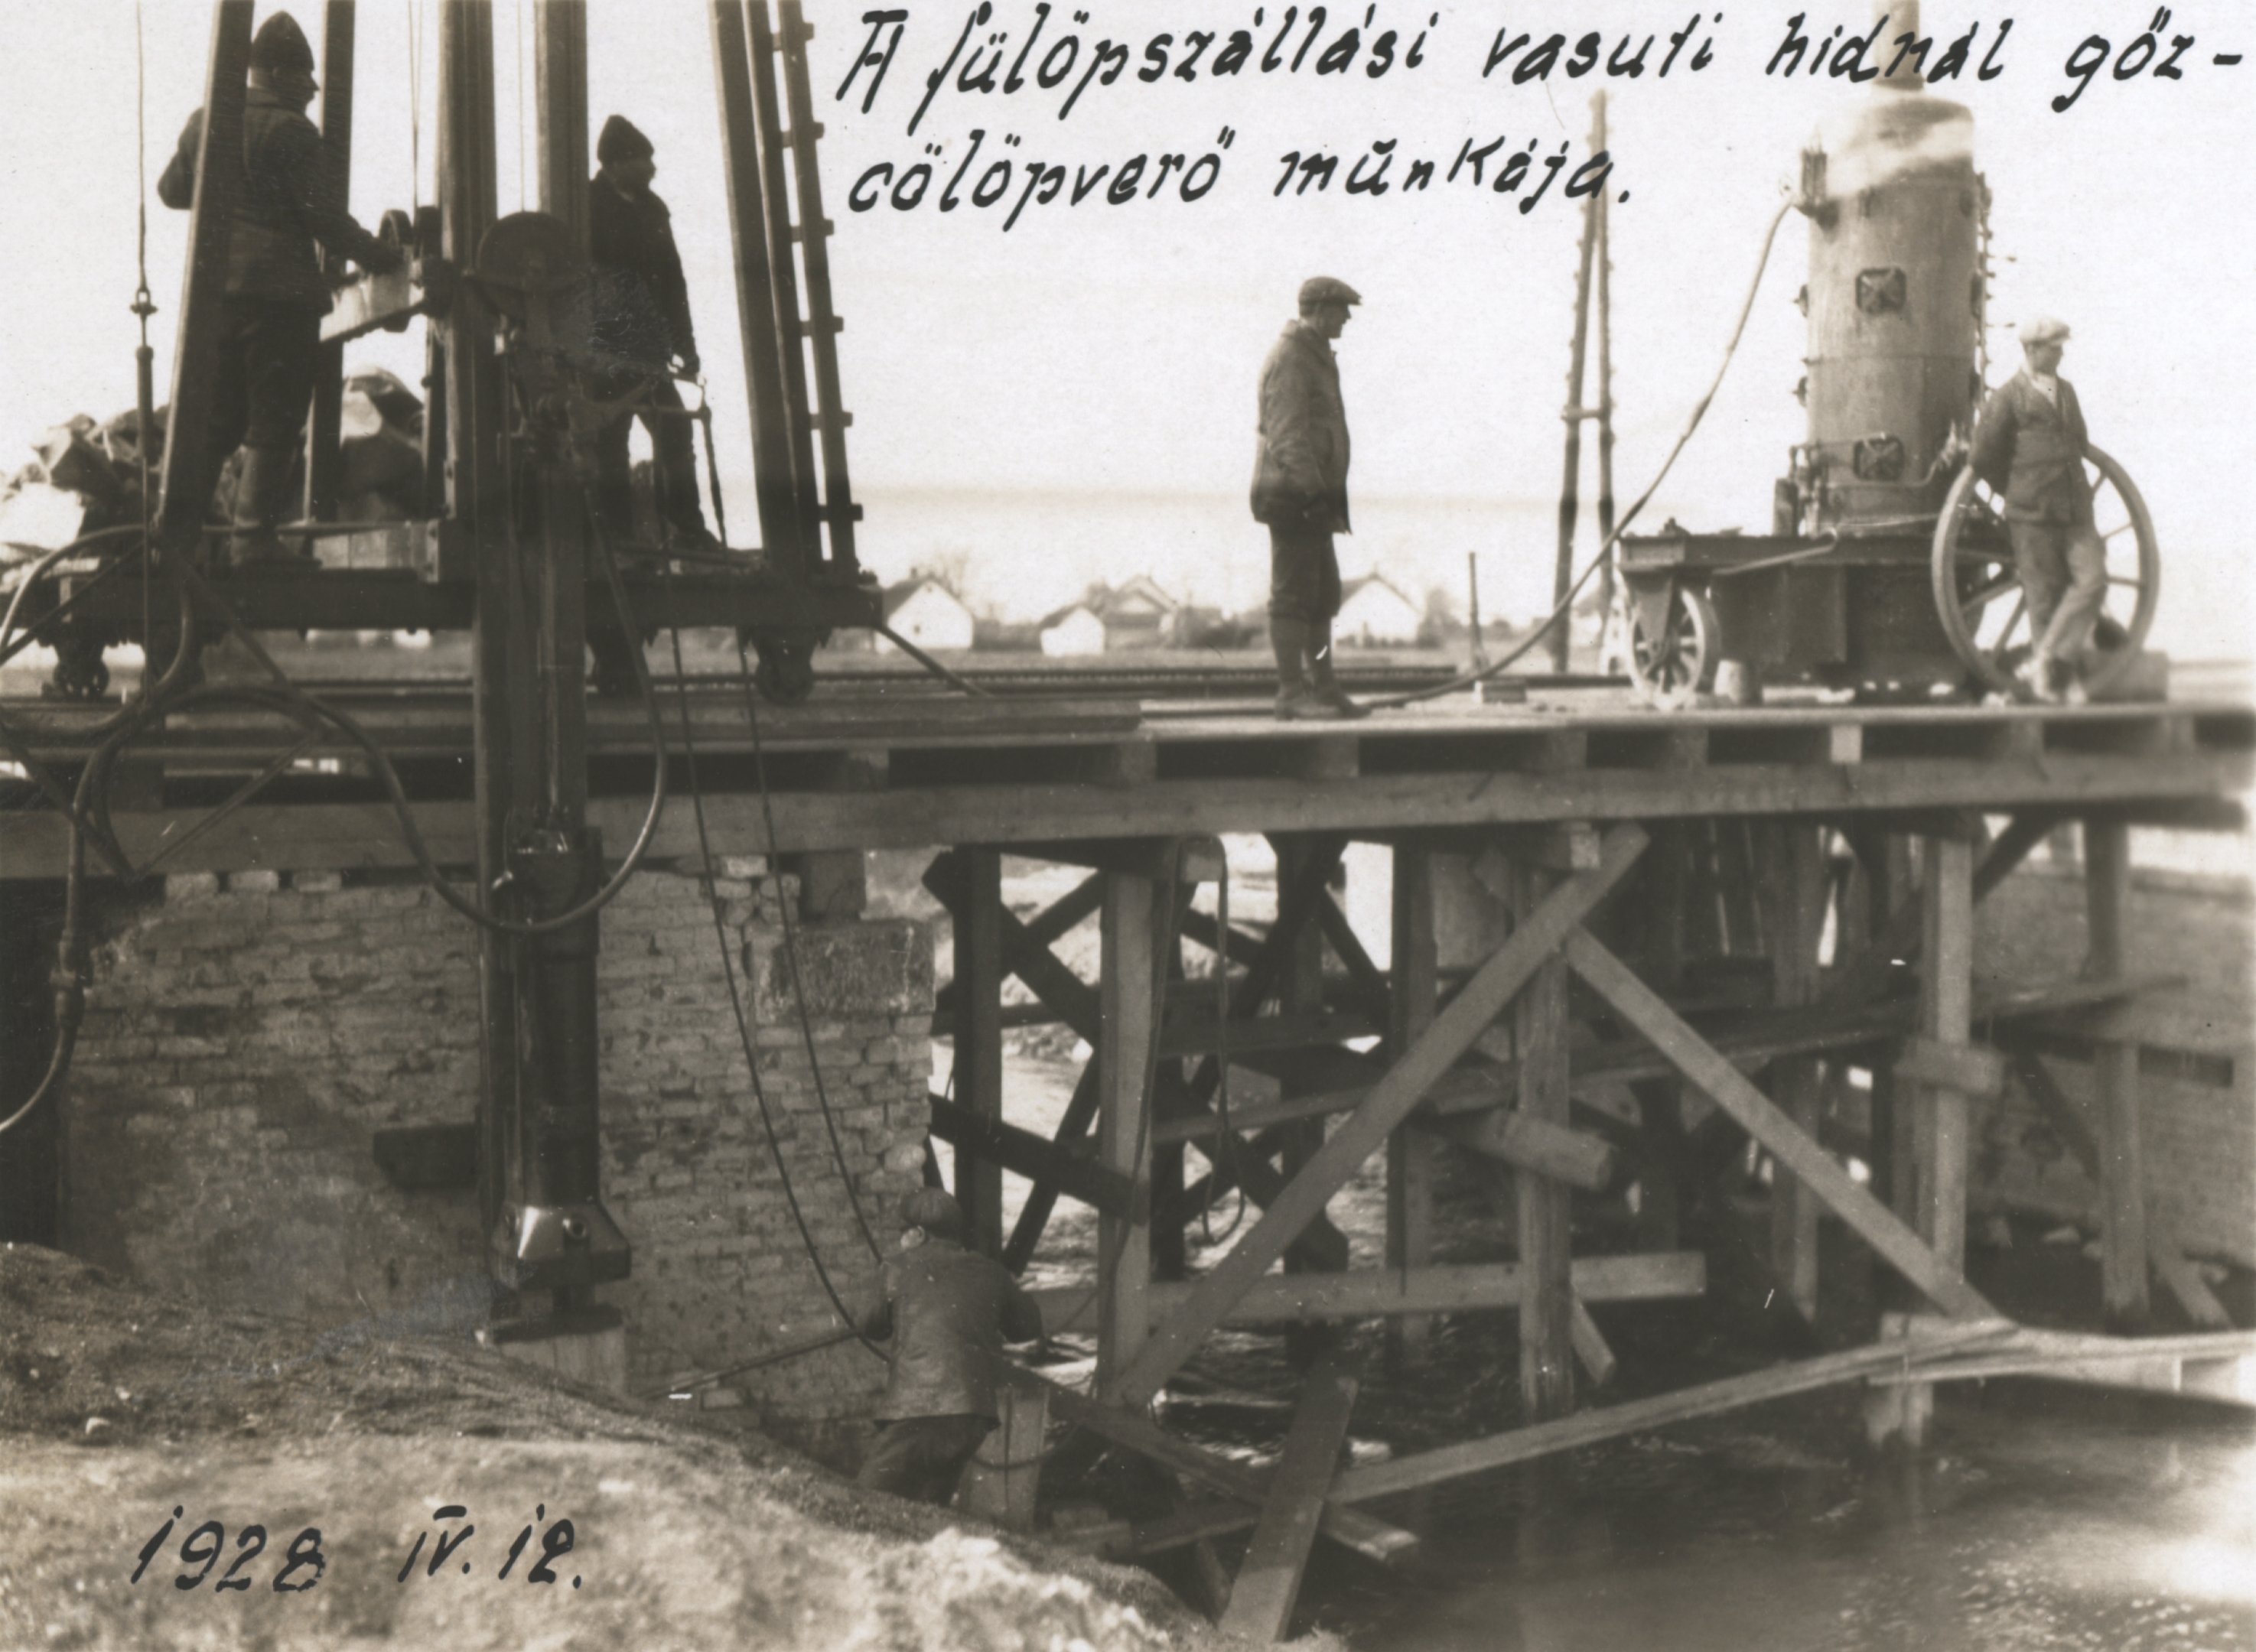 A fülöpszállási vasúti hídnál gőzcölöpverő munkája, 1928. április 12. (Magyar Környezetvédelmi és Vízügyi Múzeum - Duna Múzeum CC BY-NC-SA)